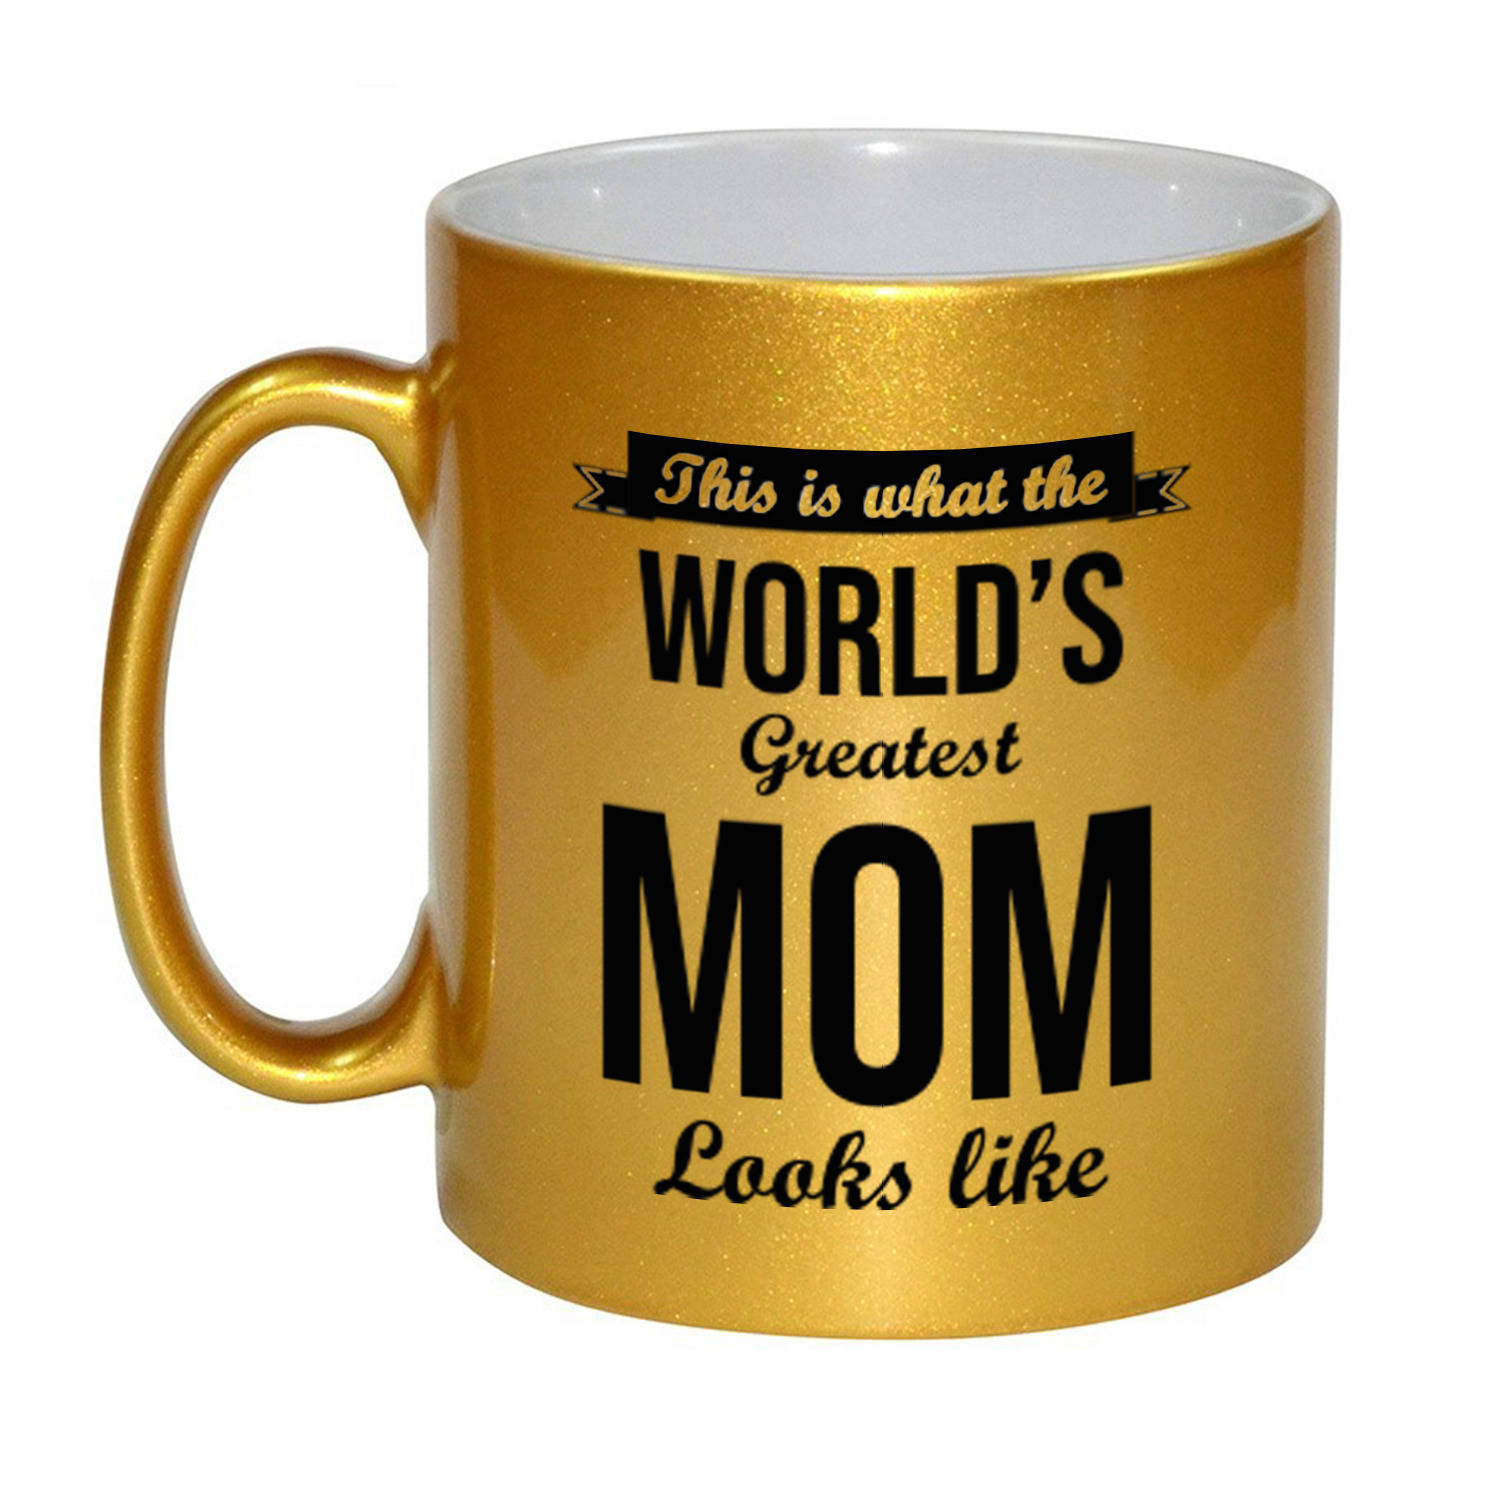 Worlds Greatest Mom cadeau mok / beker goudglanzend 330 ml - feest mokken